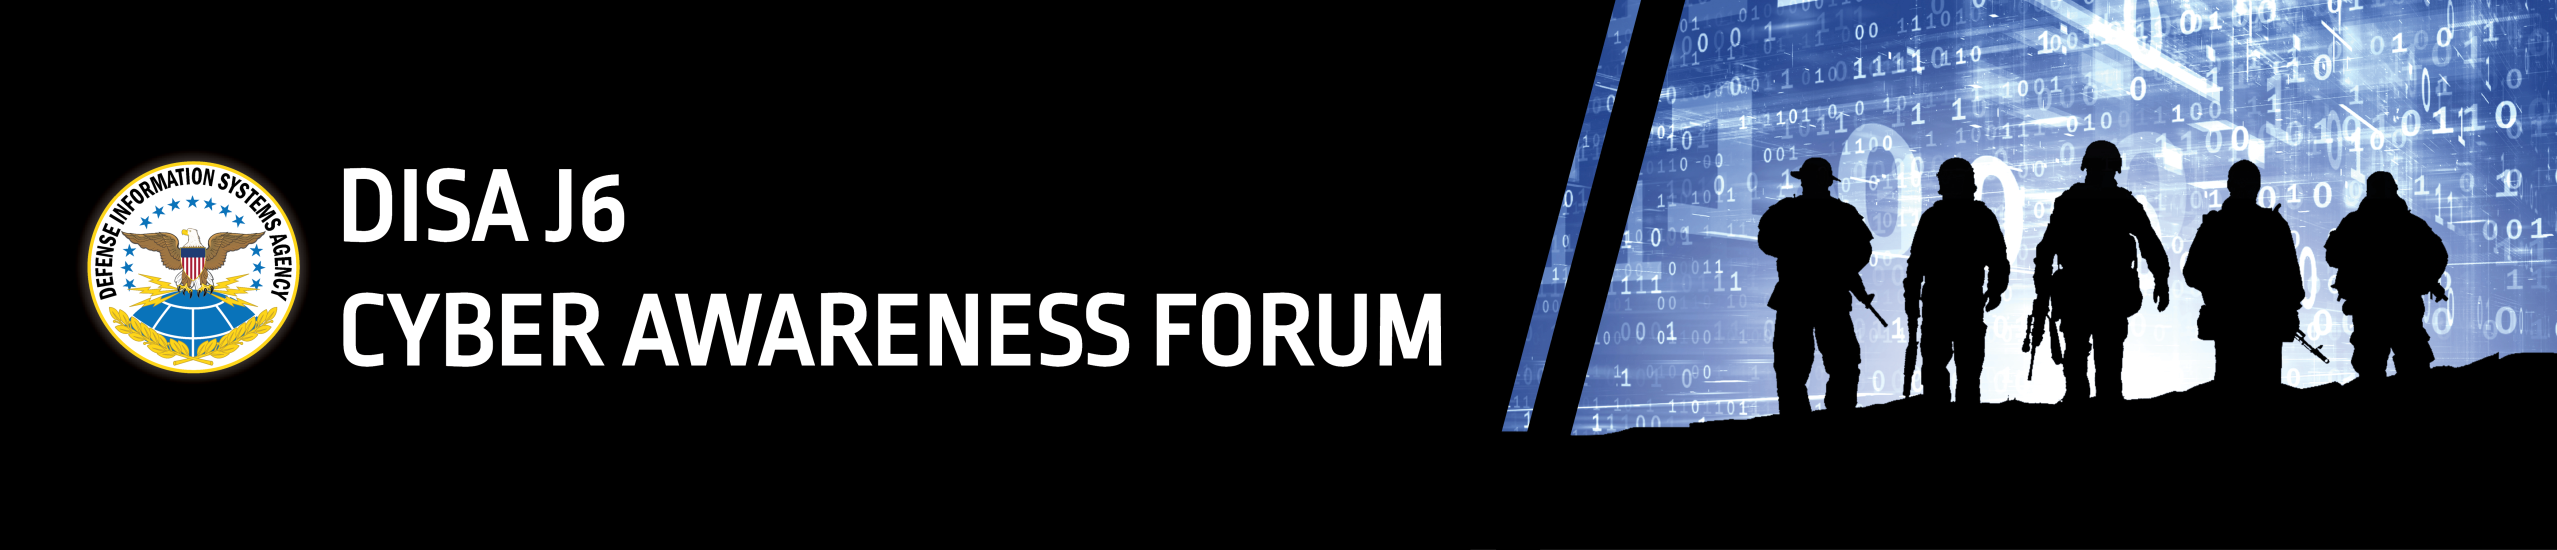 DISA Cyber Awareness Forum